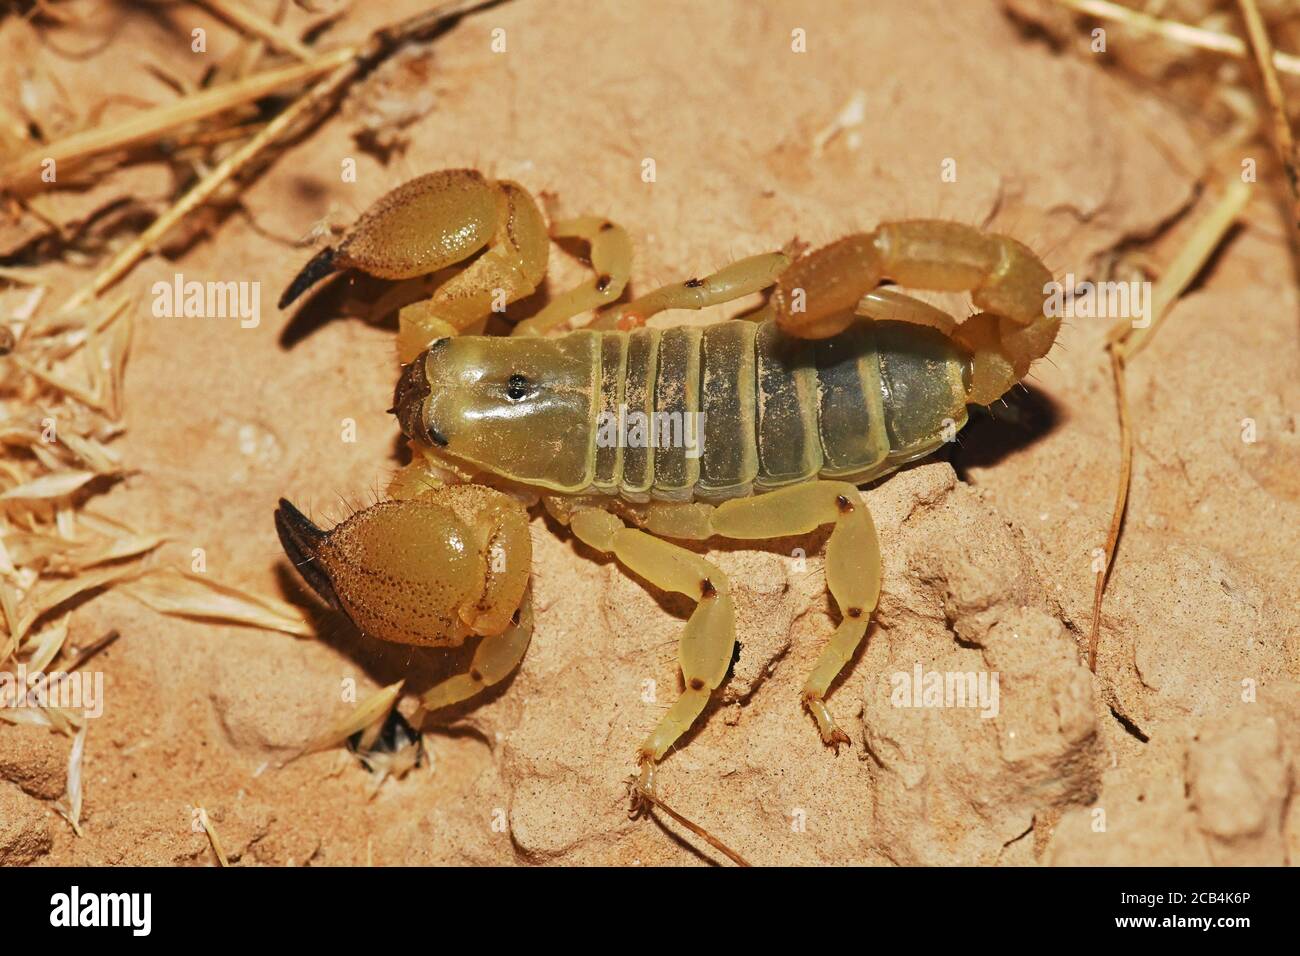 Scorpion en el desierto, closeup Foto de stock